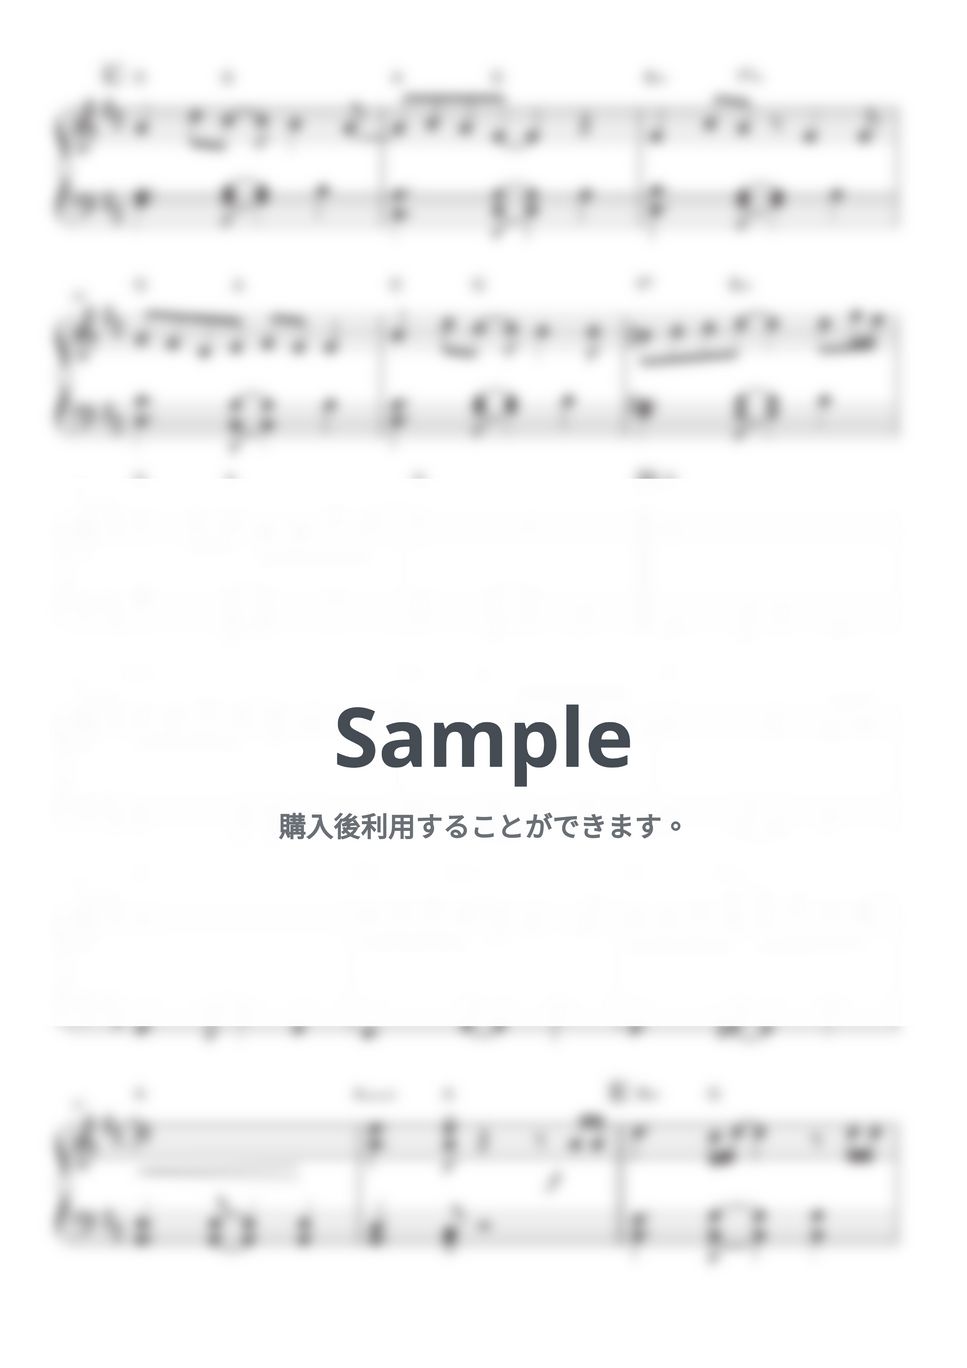 サスケ - 青いベンチ (ピアノ初級Full / 歌詞コード付) by OKANA